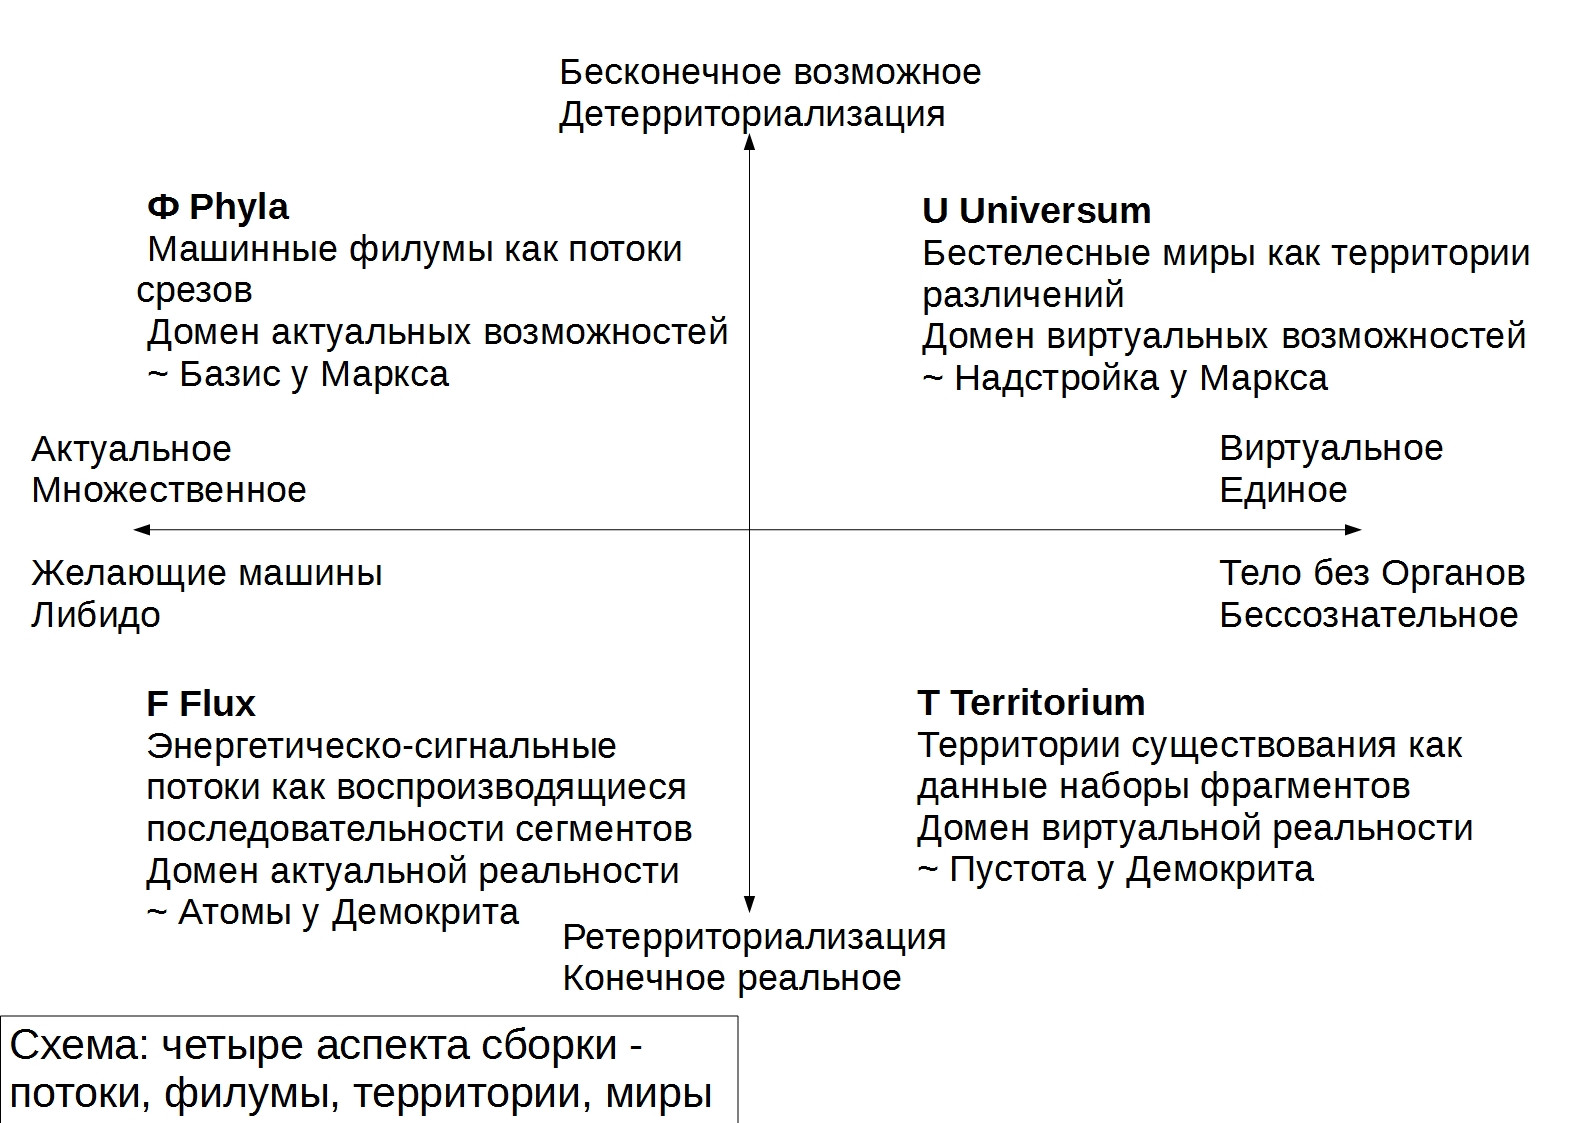 Схема четырёх аспектов сборки&nbsp;— ключевая для дальнейшего развития философии марксизма